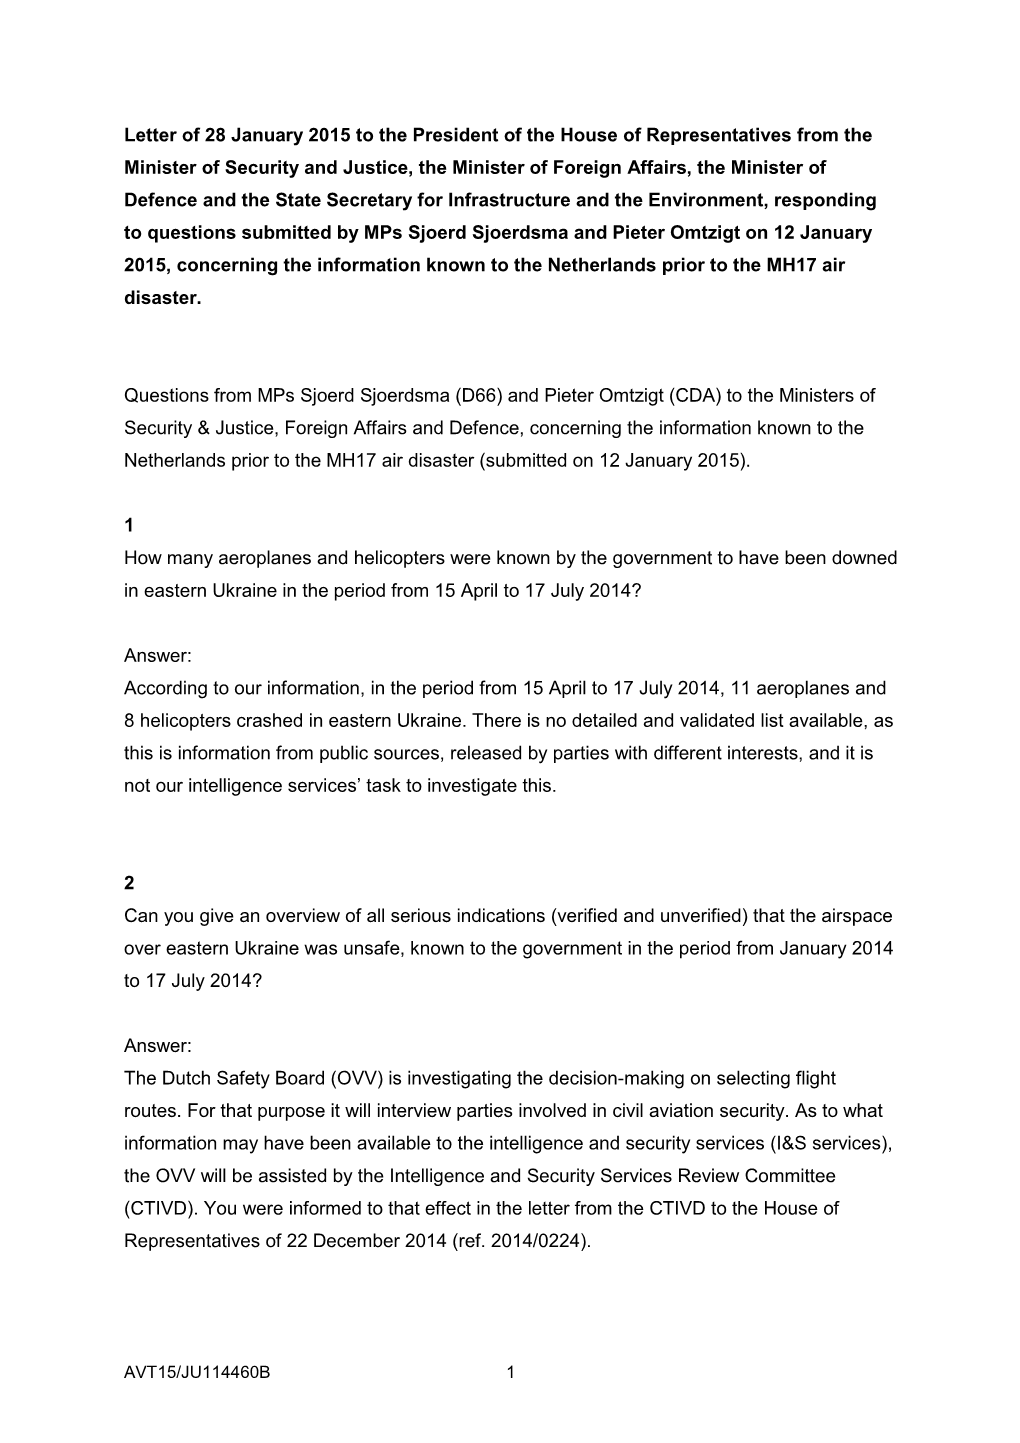 Letter Responding to Questions Sjoerdsma Omtzigt 12 January 2015